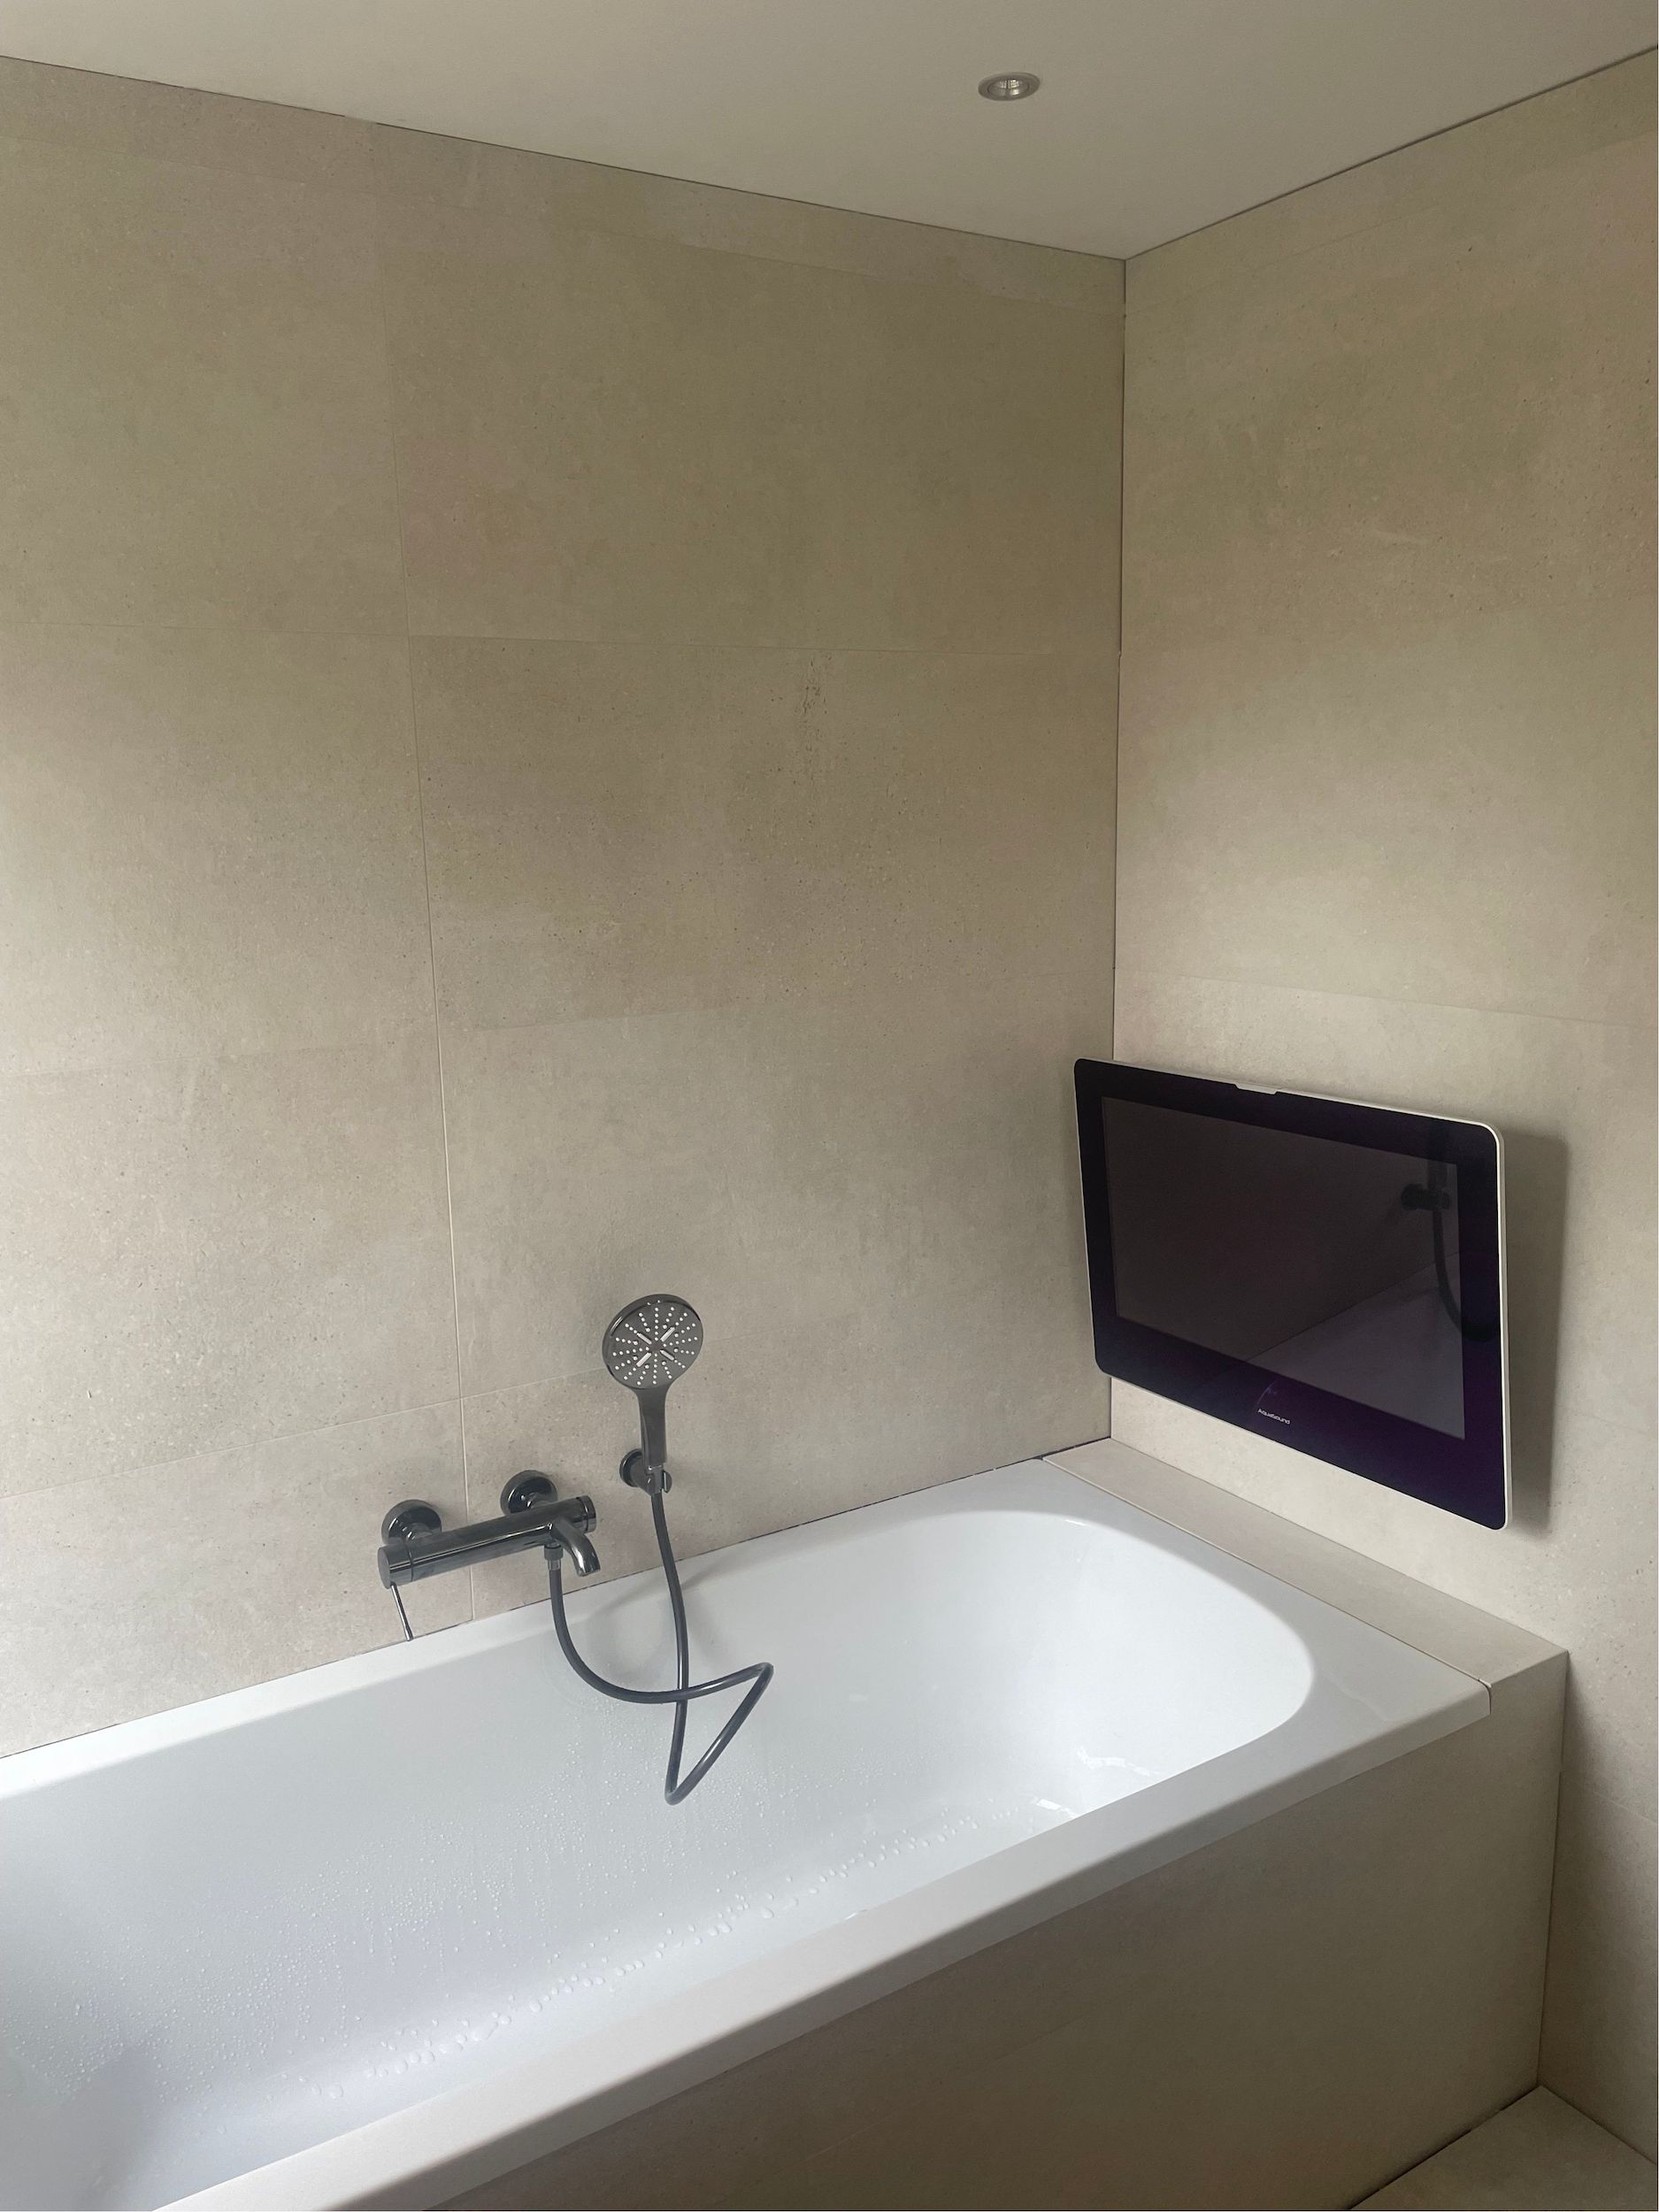 Bizot Installatietechniek – Project badkamer verbouwing 2022 2